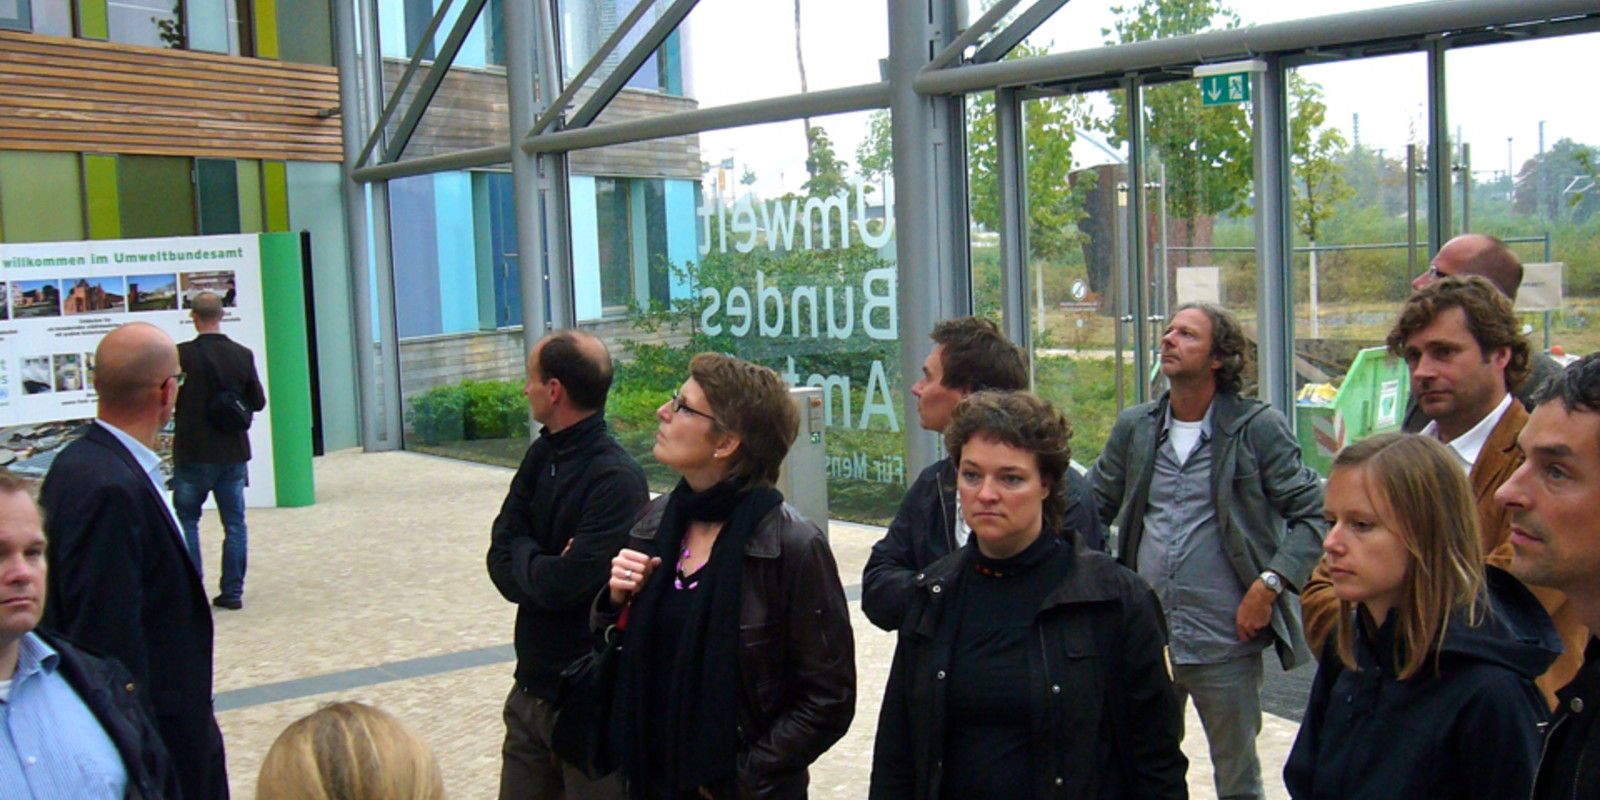 Tour der Moderne - pro office Bremen und Hannover besuchen Weimar und Dessau Bild 16